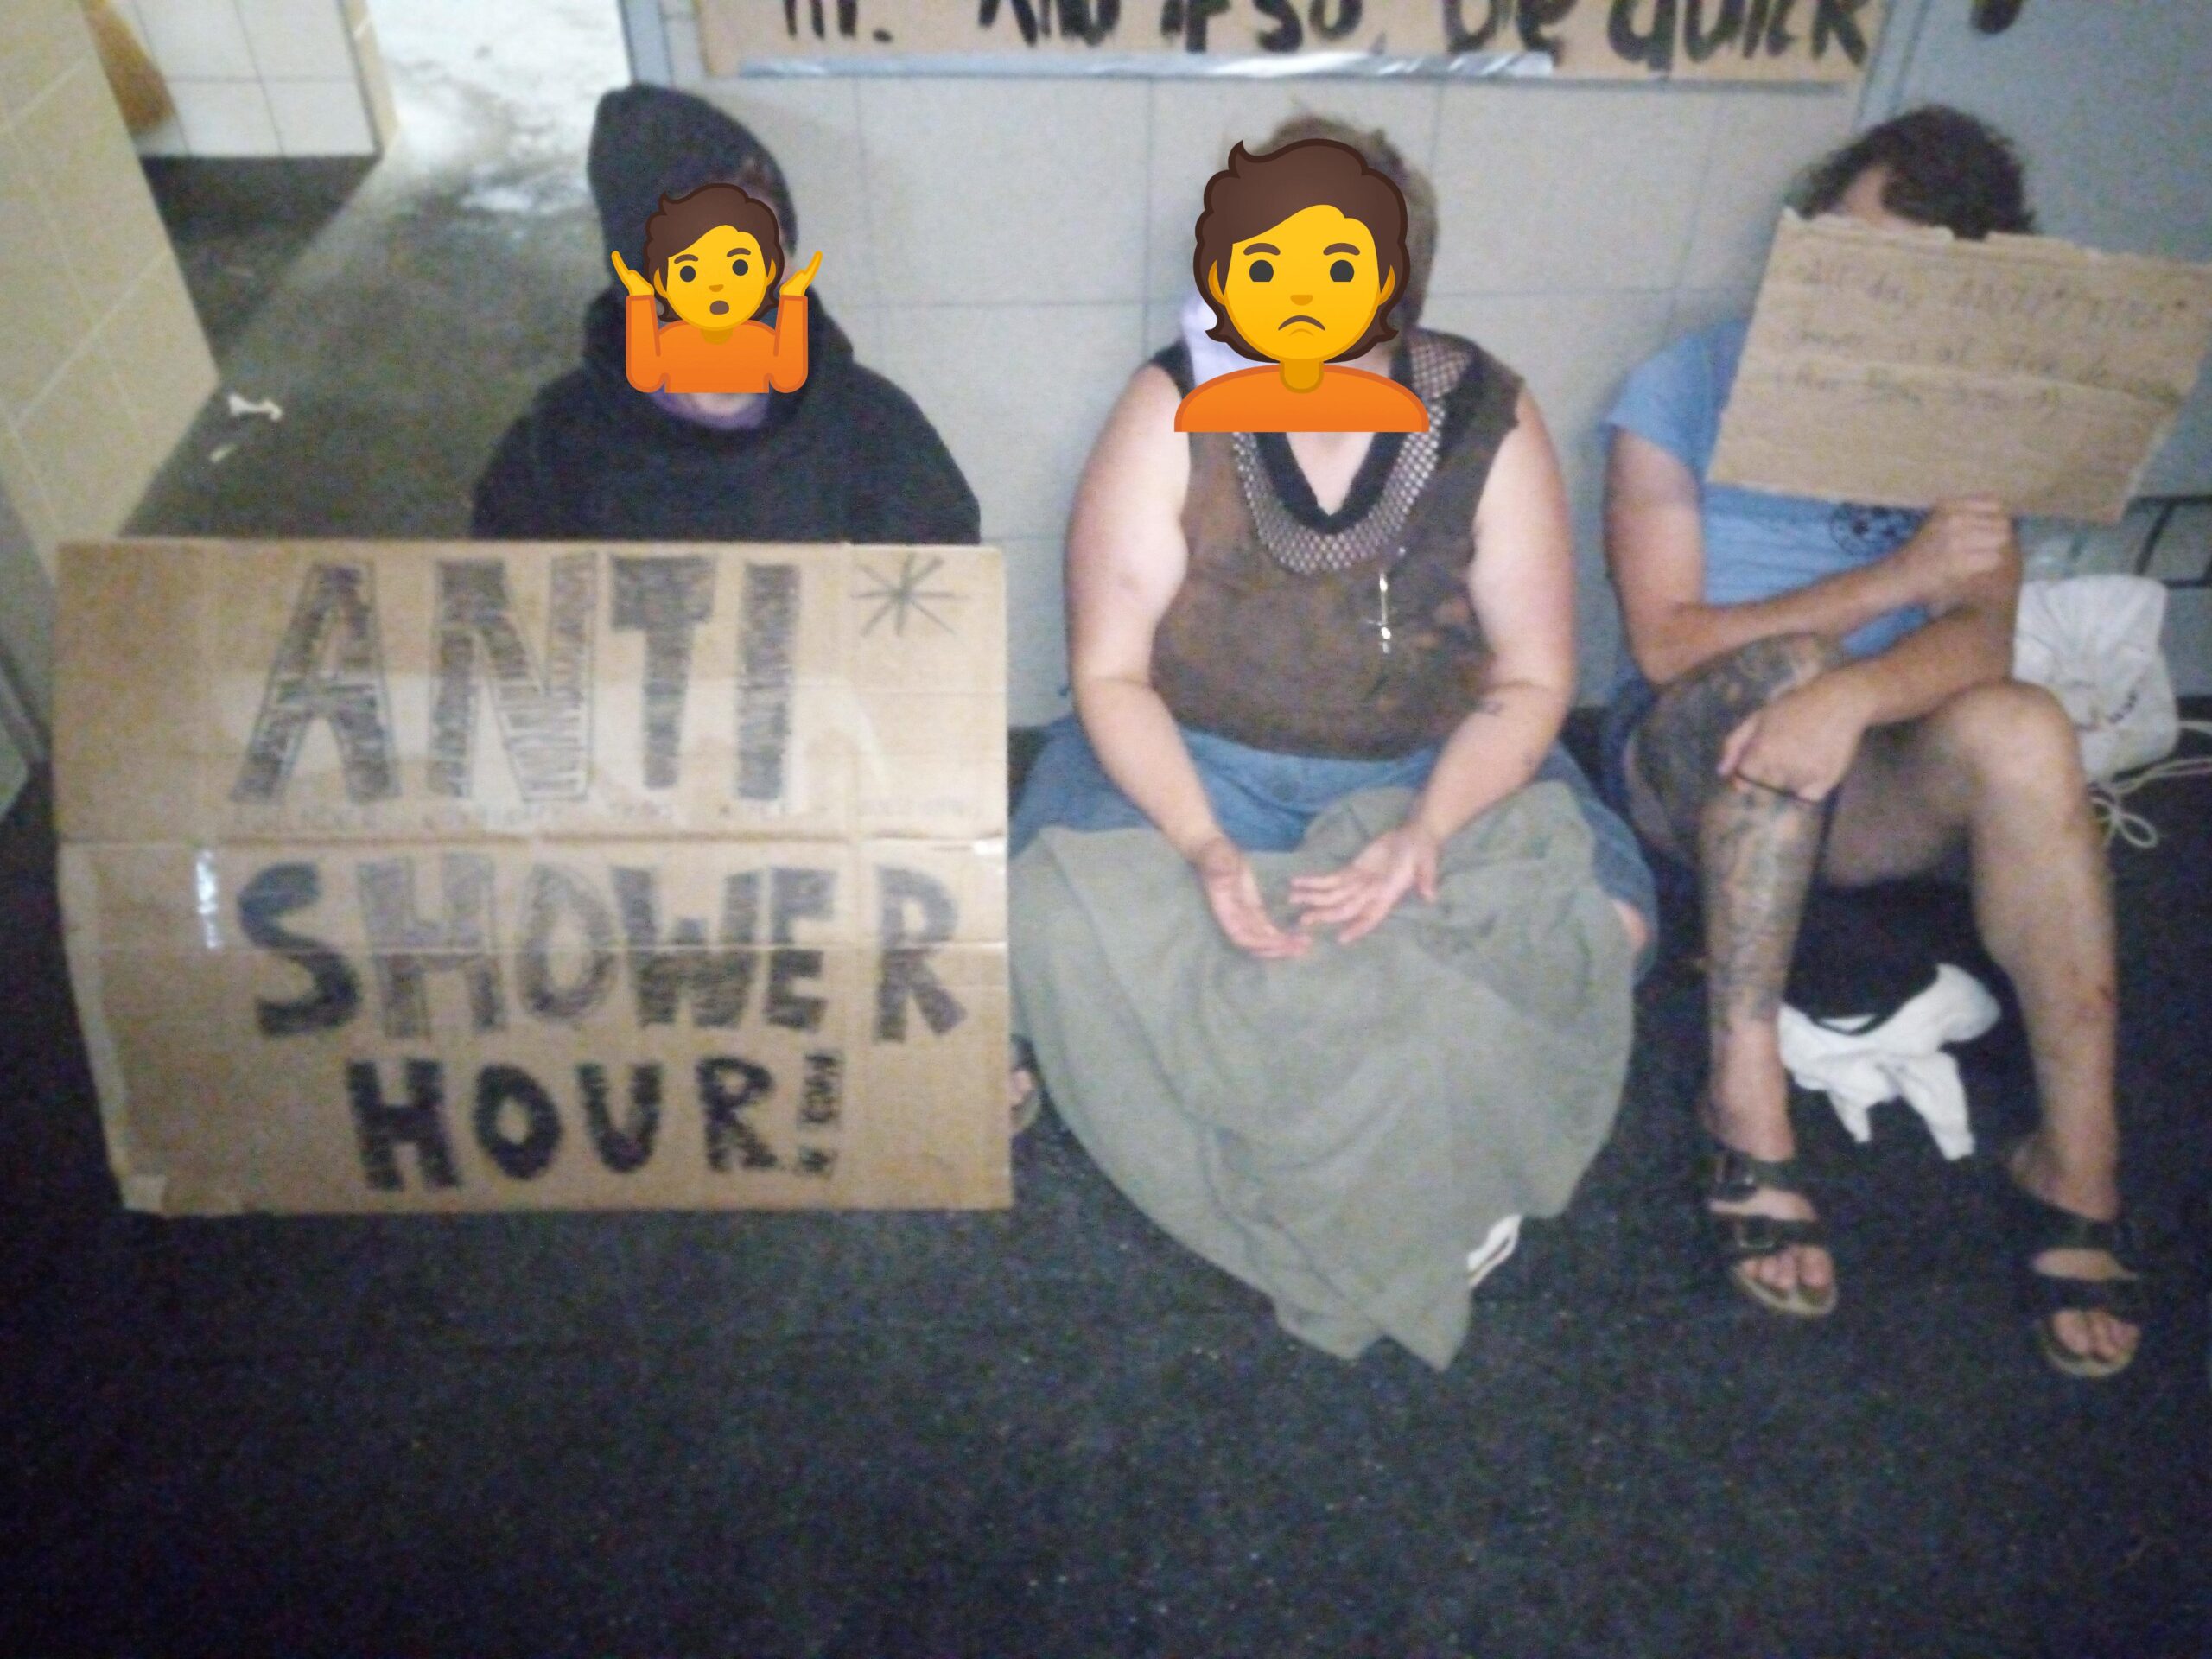 Menschen sitzen vor einer Gemeinschaftsdusche, mit einem Schild auf dem "Agender Trans Nonbinary Inter Shower Hour" steht.